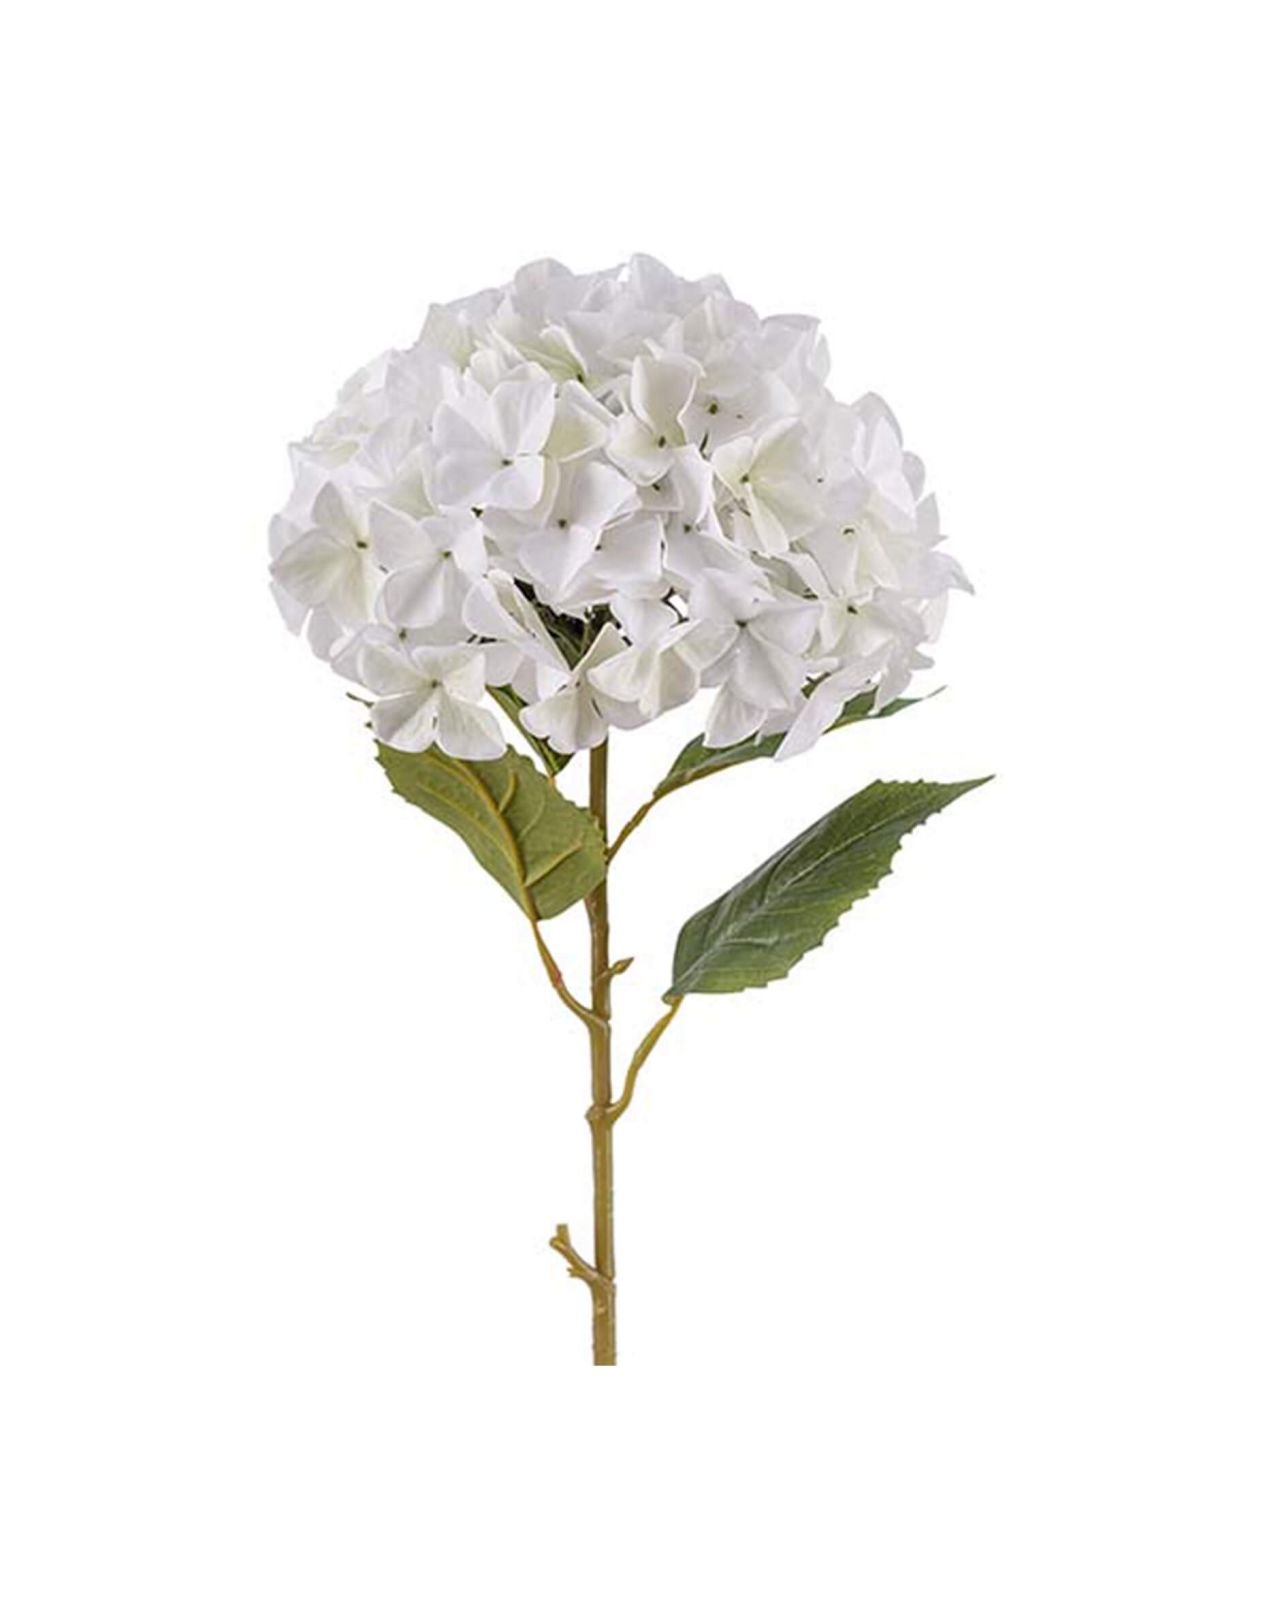 Hydrangea faux flower (white)